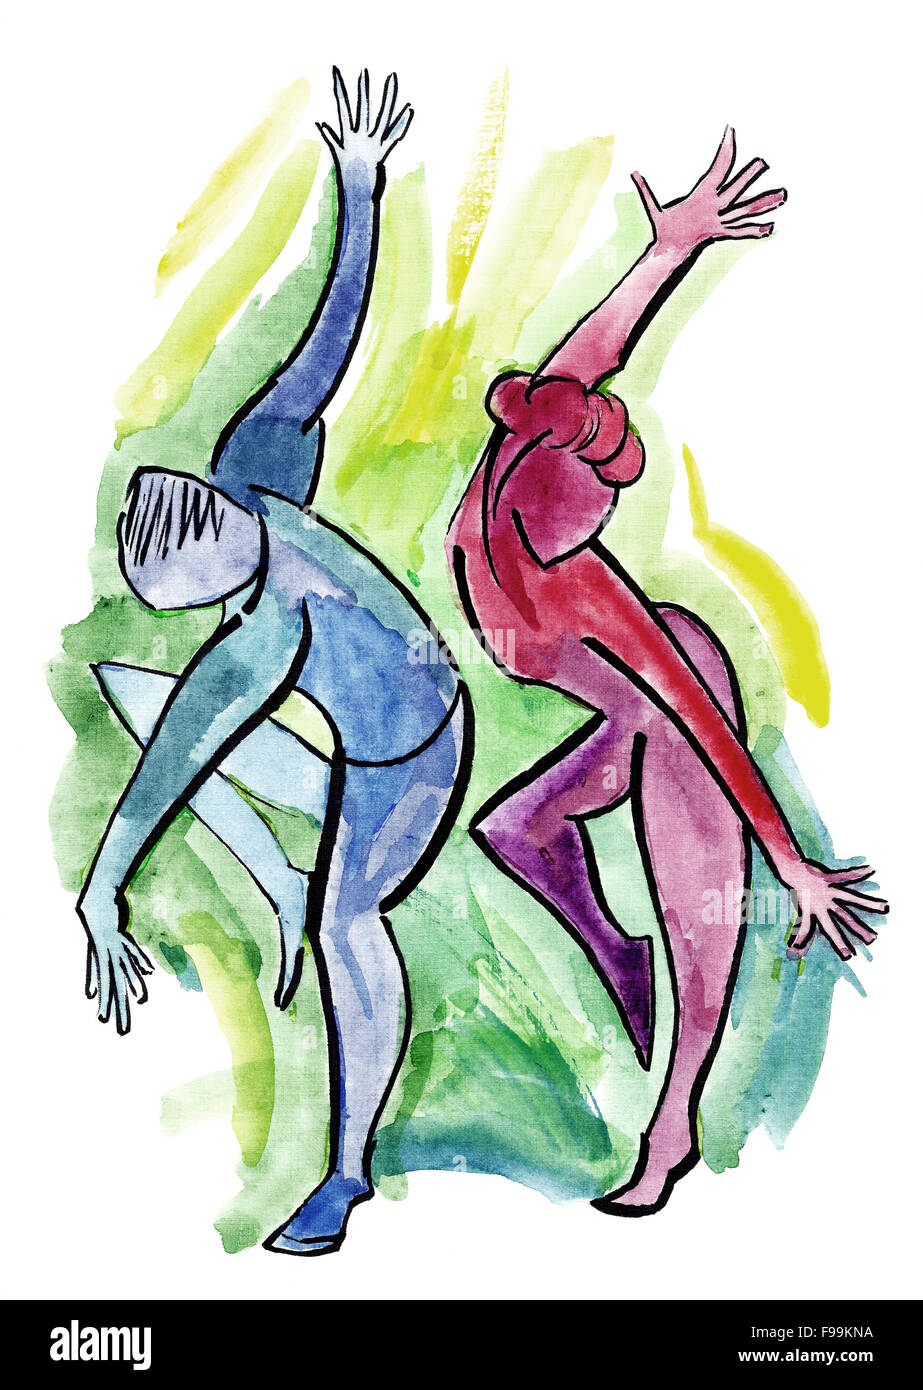 L'homme et de la femme de danser sur une piste de danse. Illustration dans un style moderne. Banque D'Images